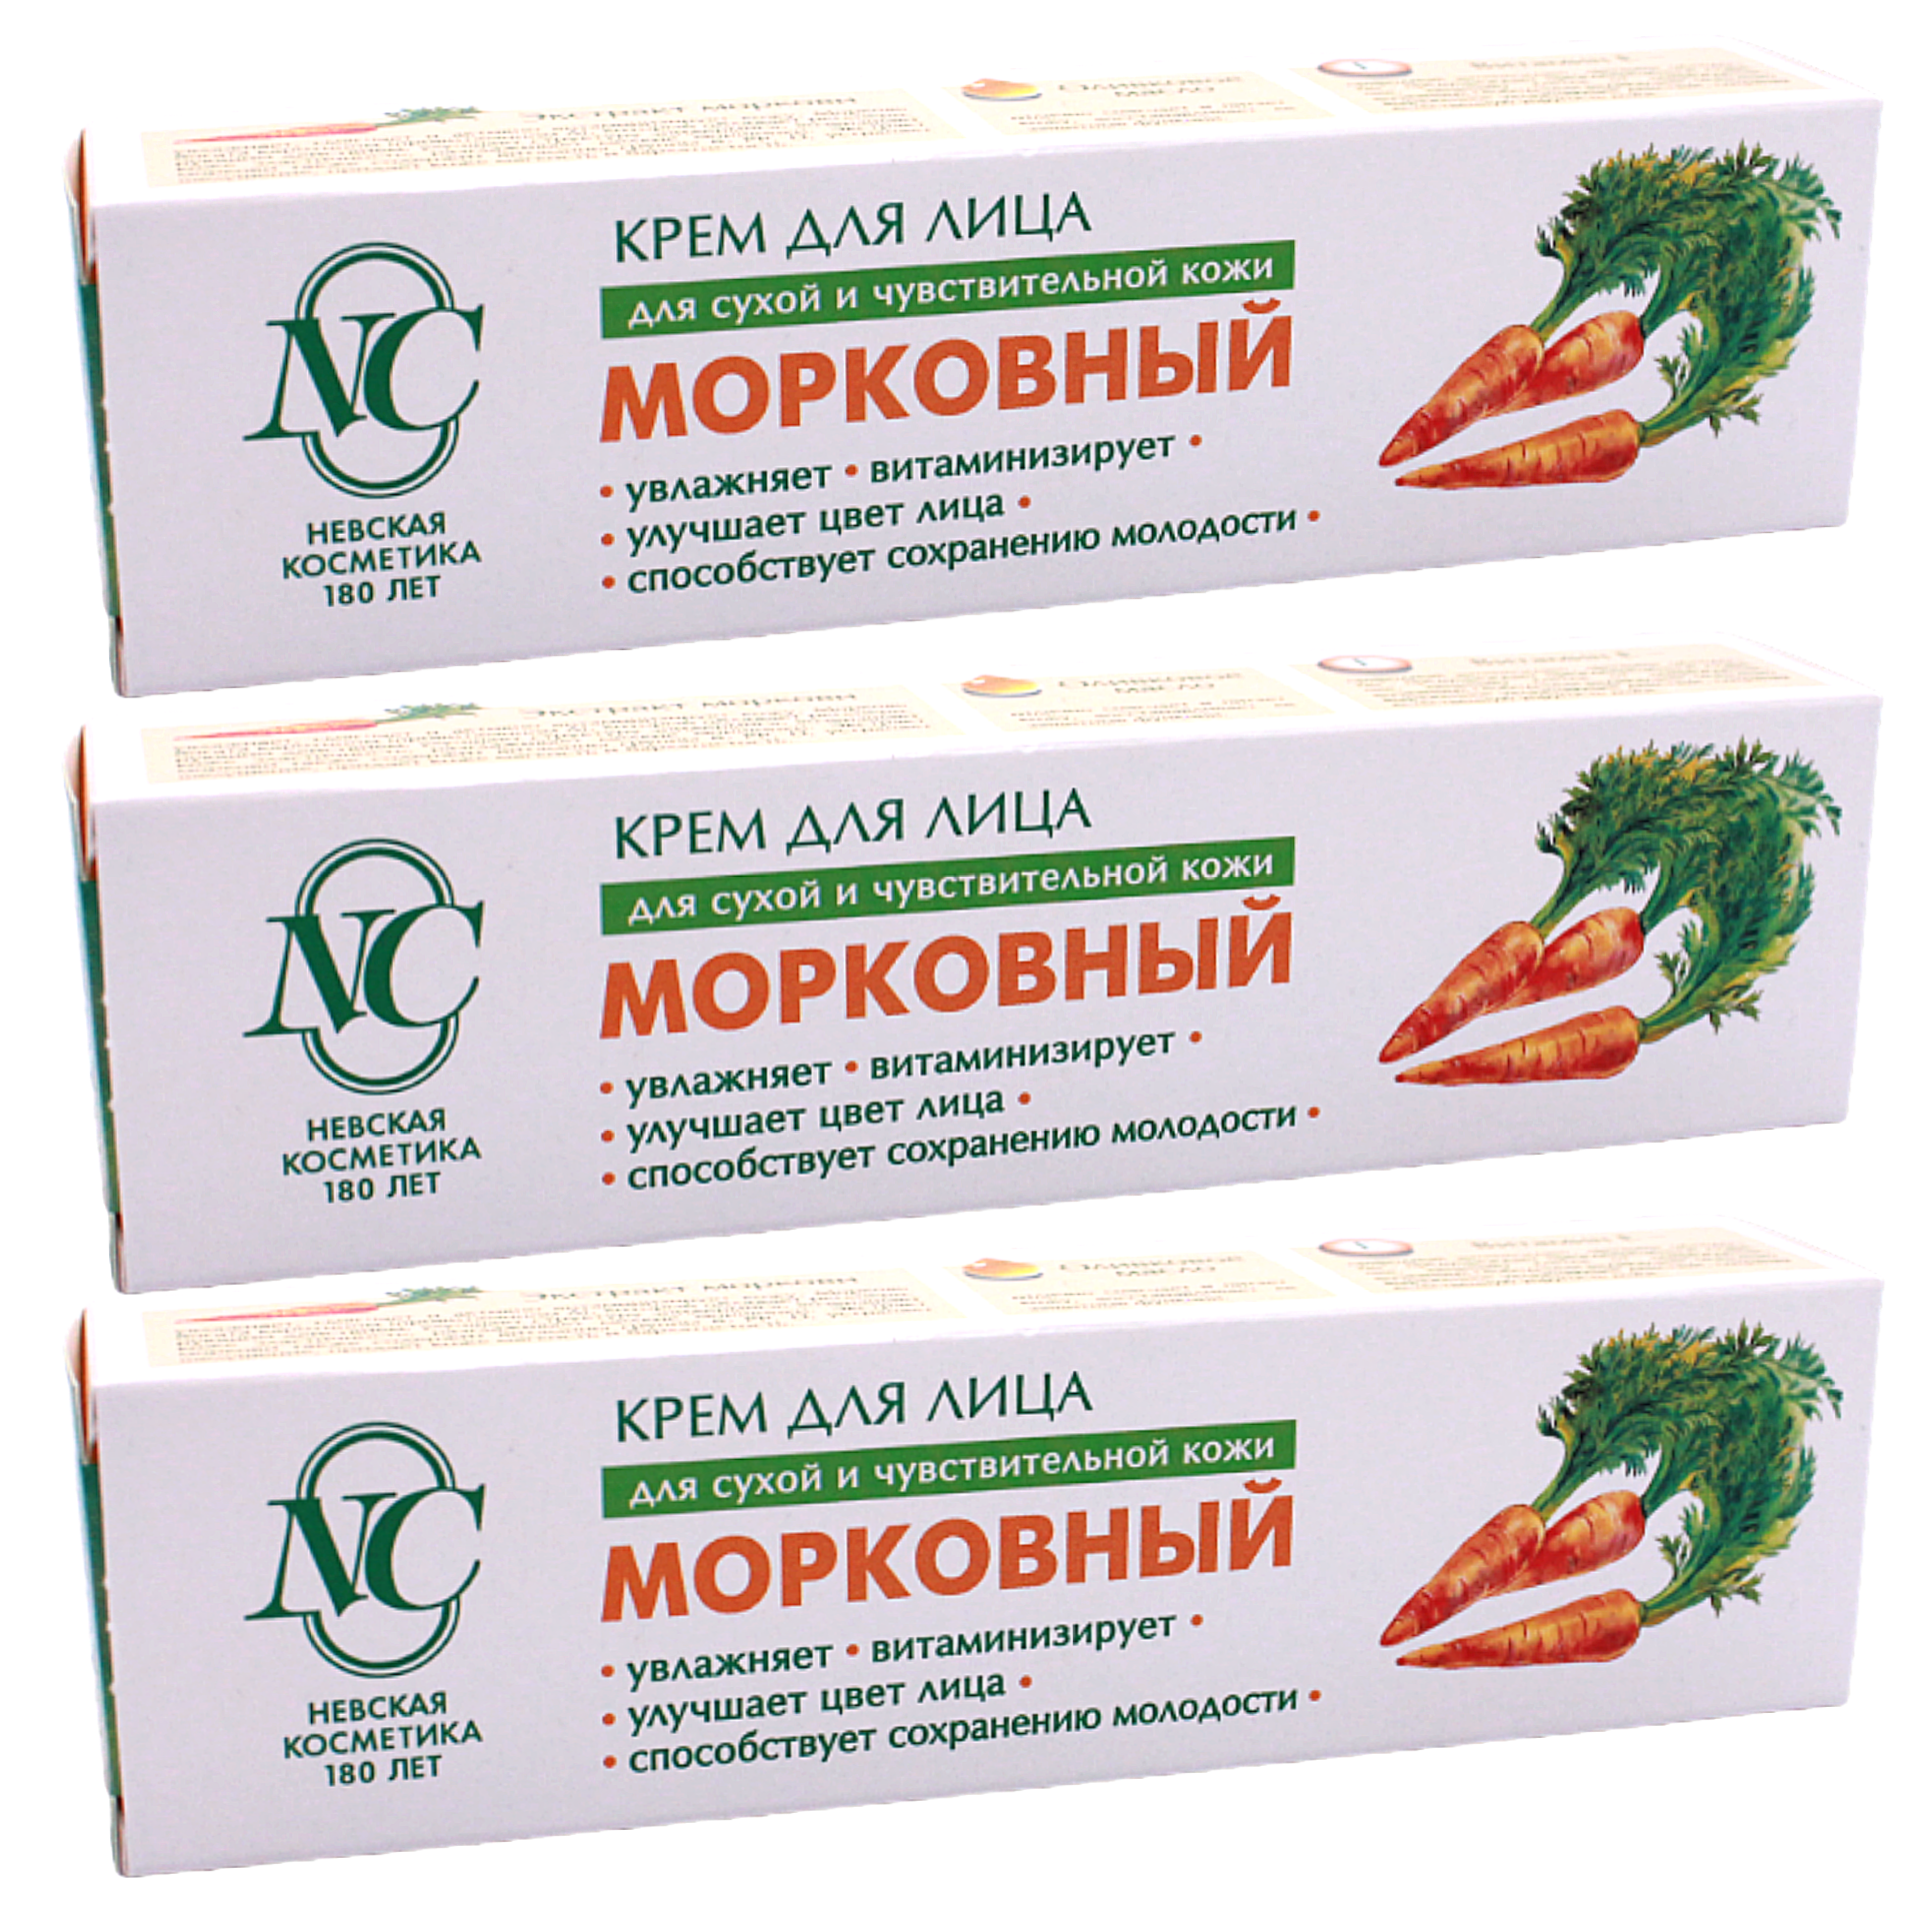 Невская косметика Крем Морковный, 40 мл набор 3 шт